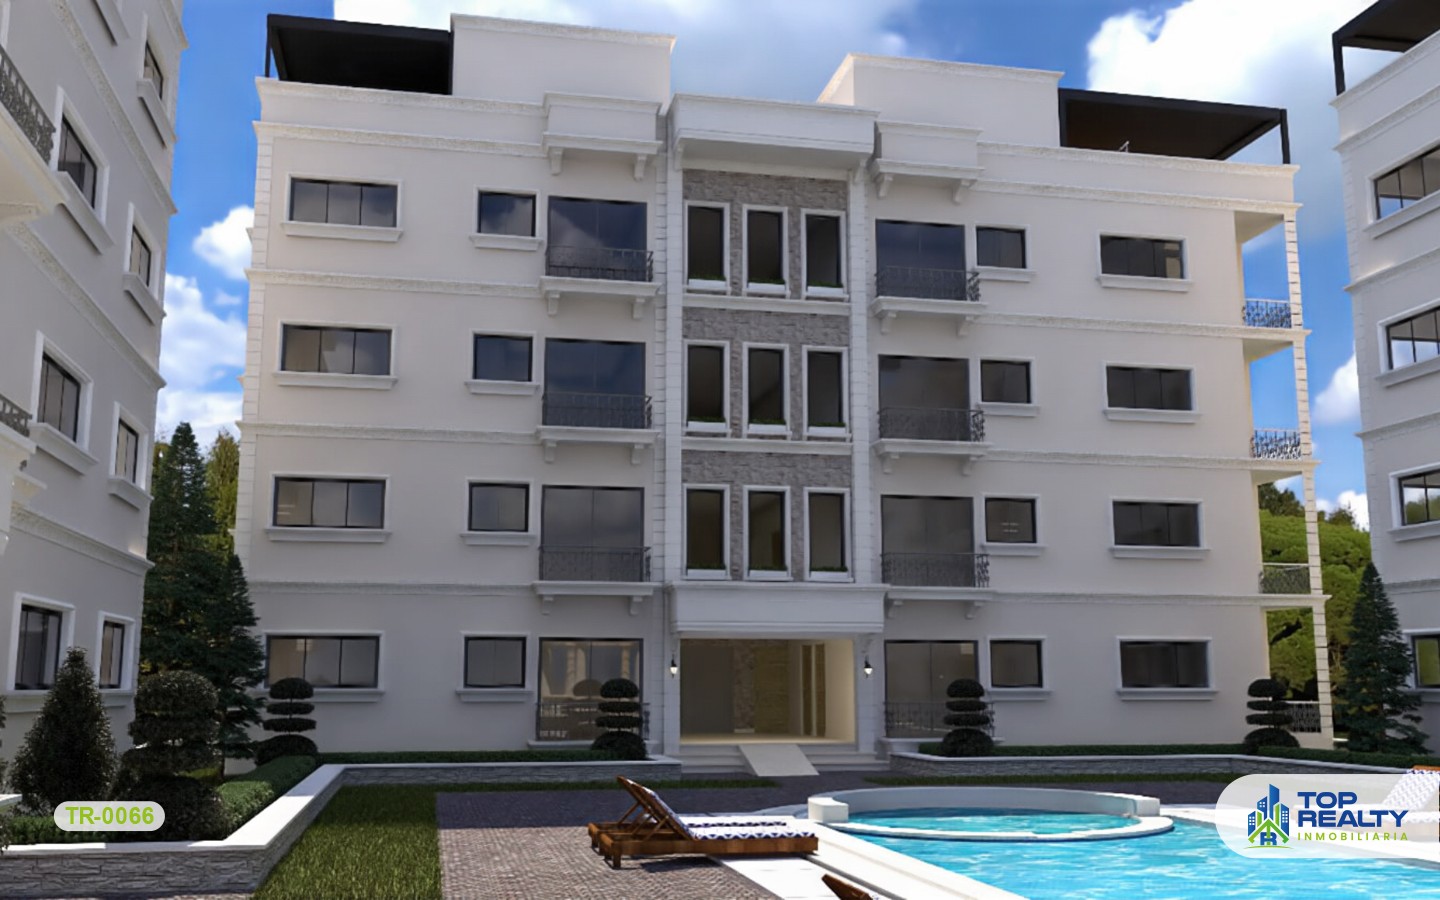 apartamentos - TR-0066: Revolucionario proyecto de estilo arquitectonico moderno en la Romana 0